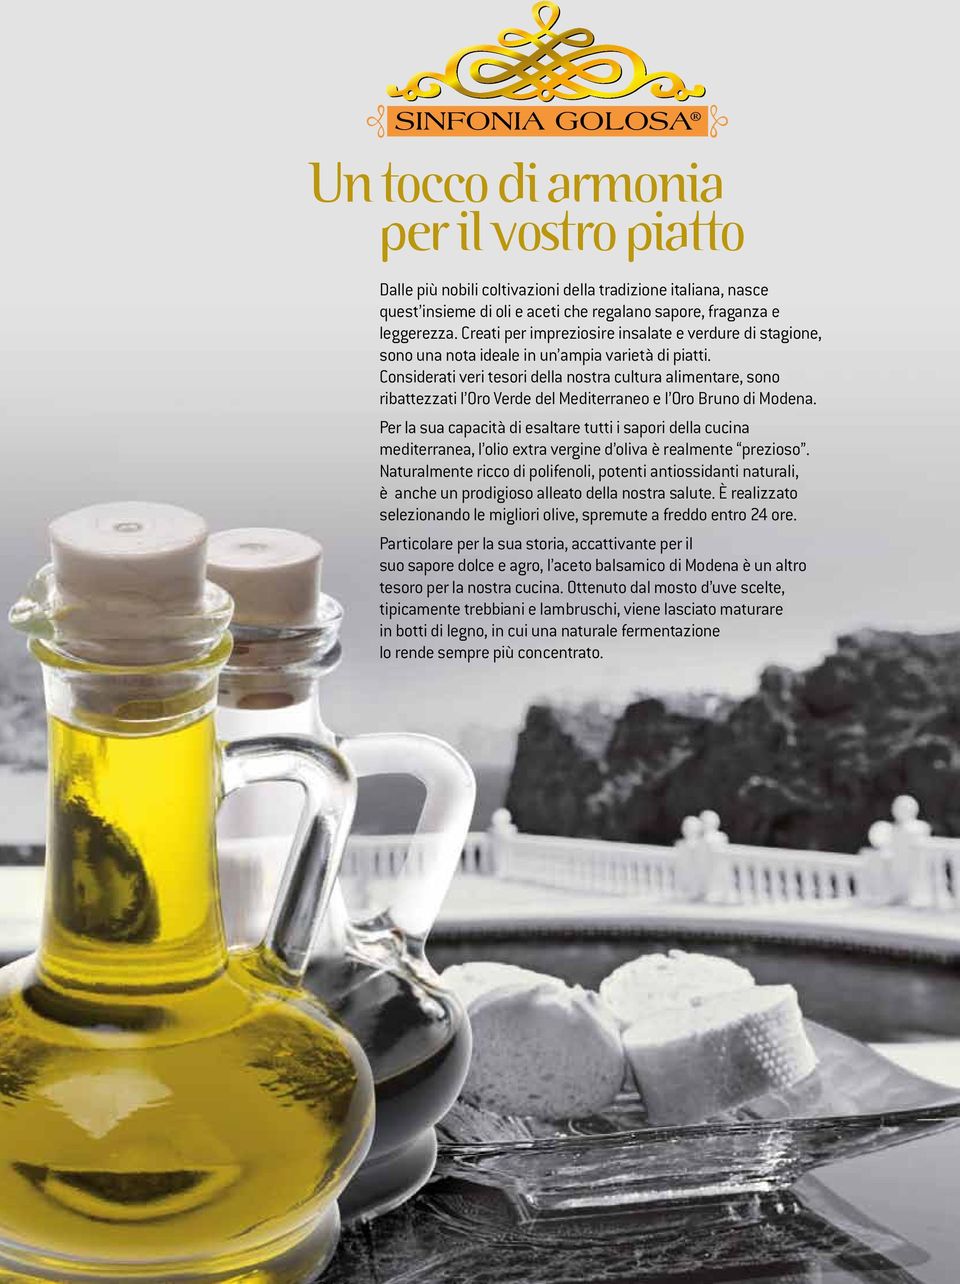 Considerati veri tesori della nostra cultura alimentare, sono ribattezzati l Oro Verde del Mediterraneo e l Oro Bruno di Modena.